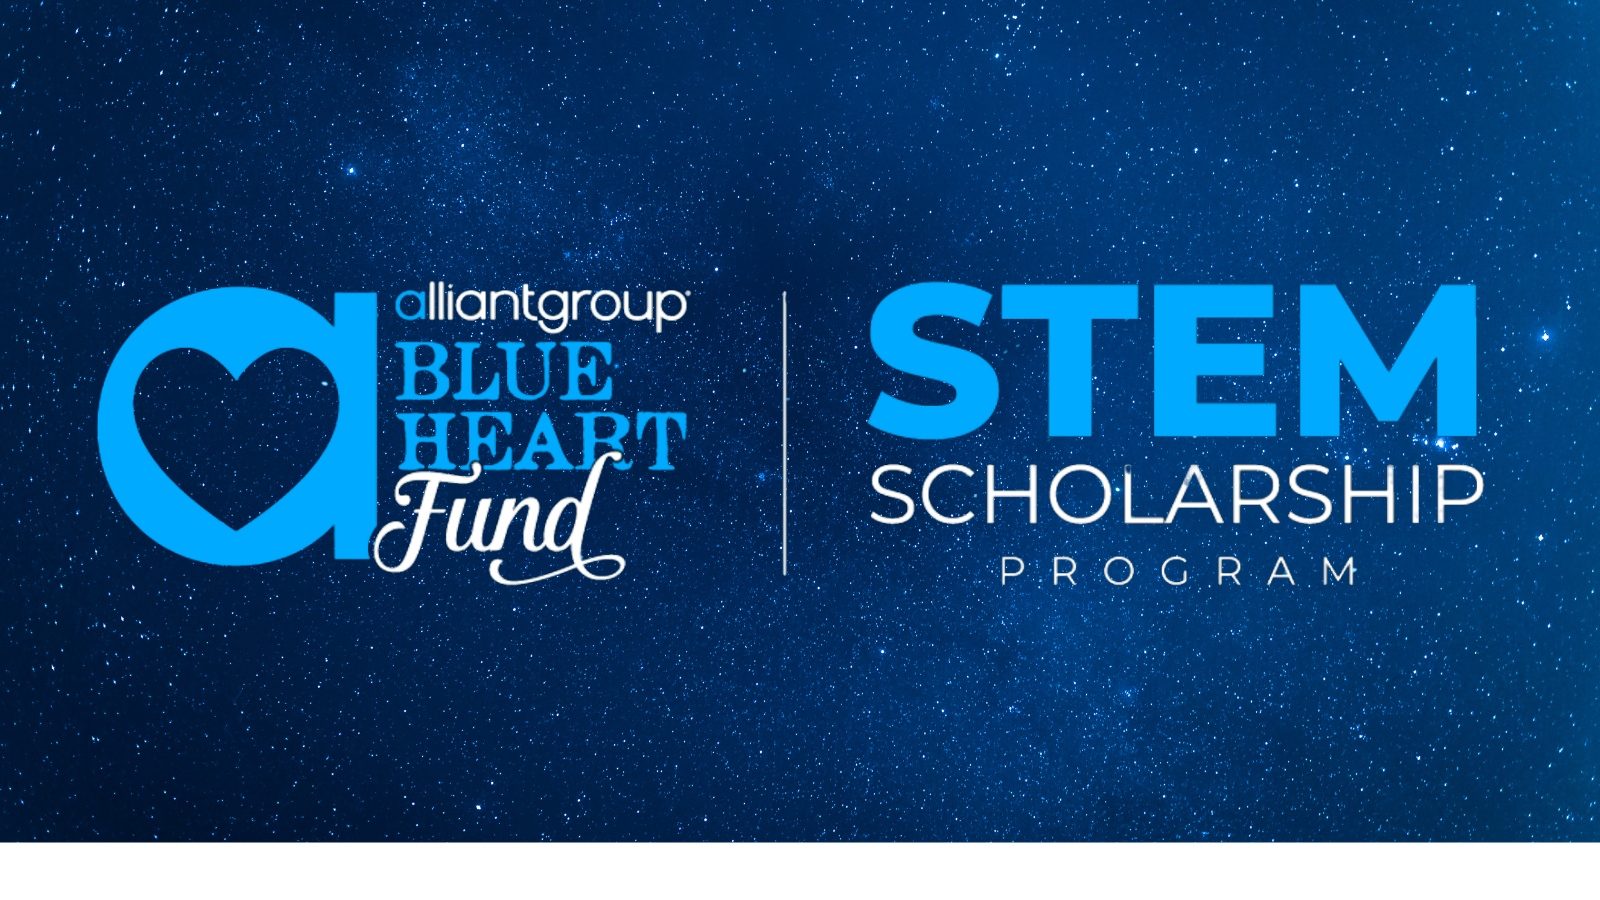 2021 alliantgroup STEM Scholarship Program, alliantgroup Houston Info